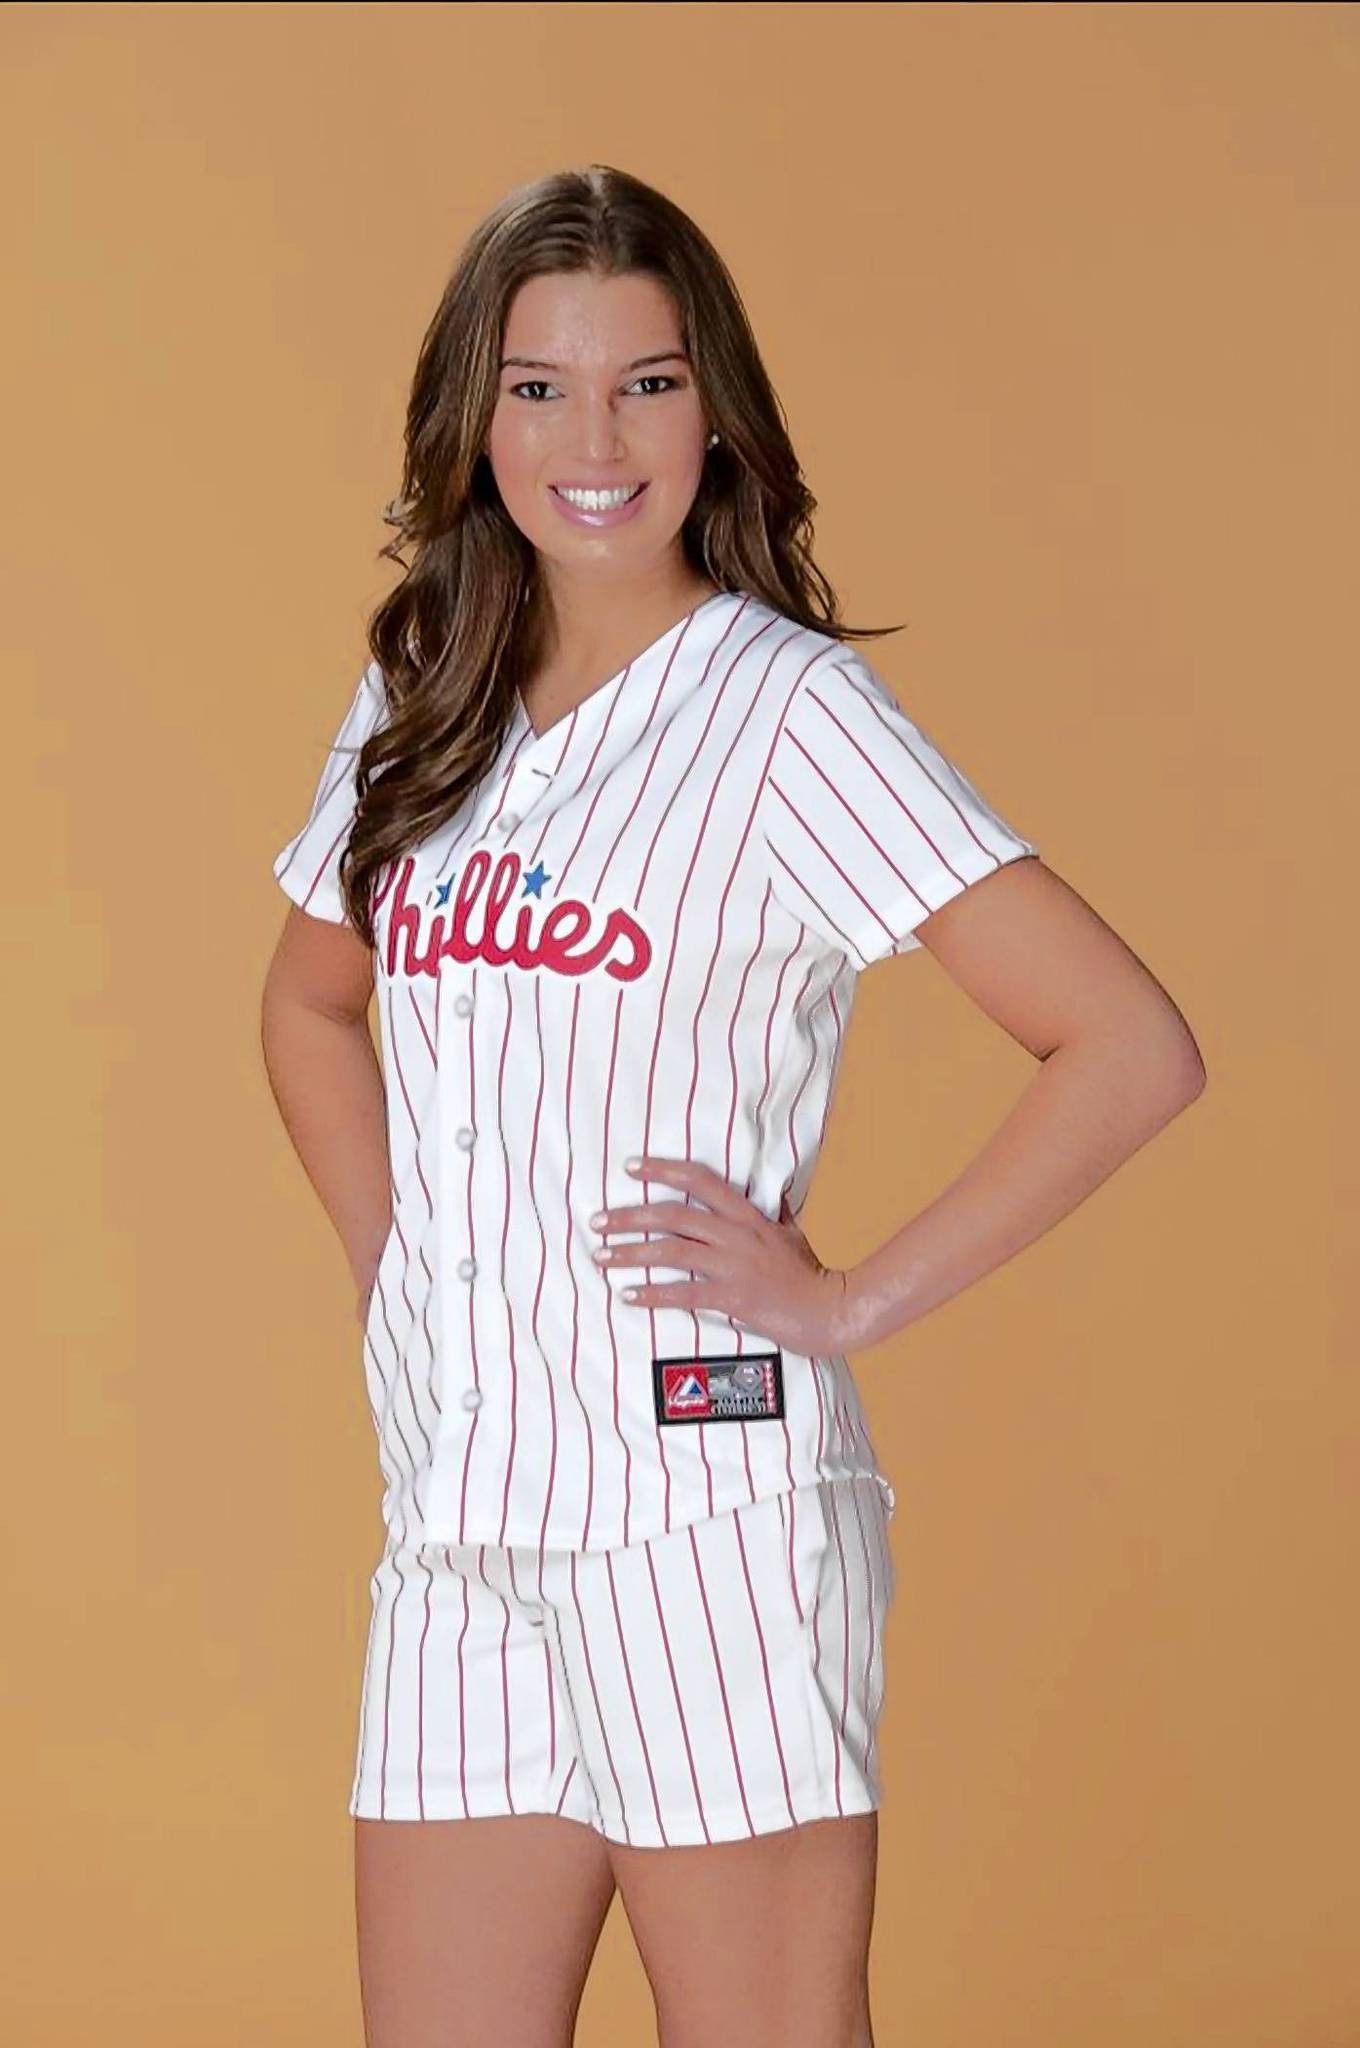 Lehigh Valley women get dream jobs: Phillies ball girls - The Morning Call